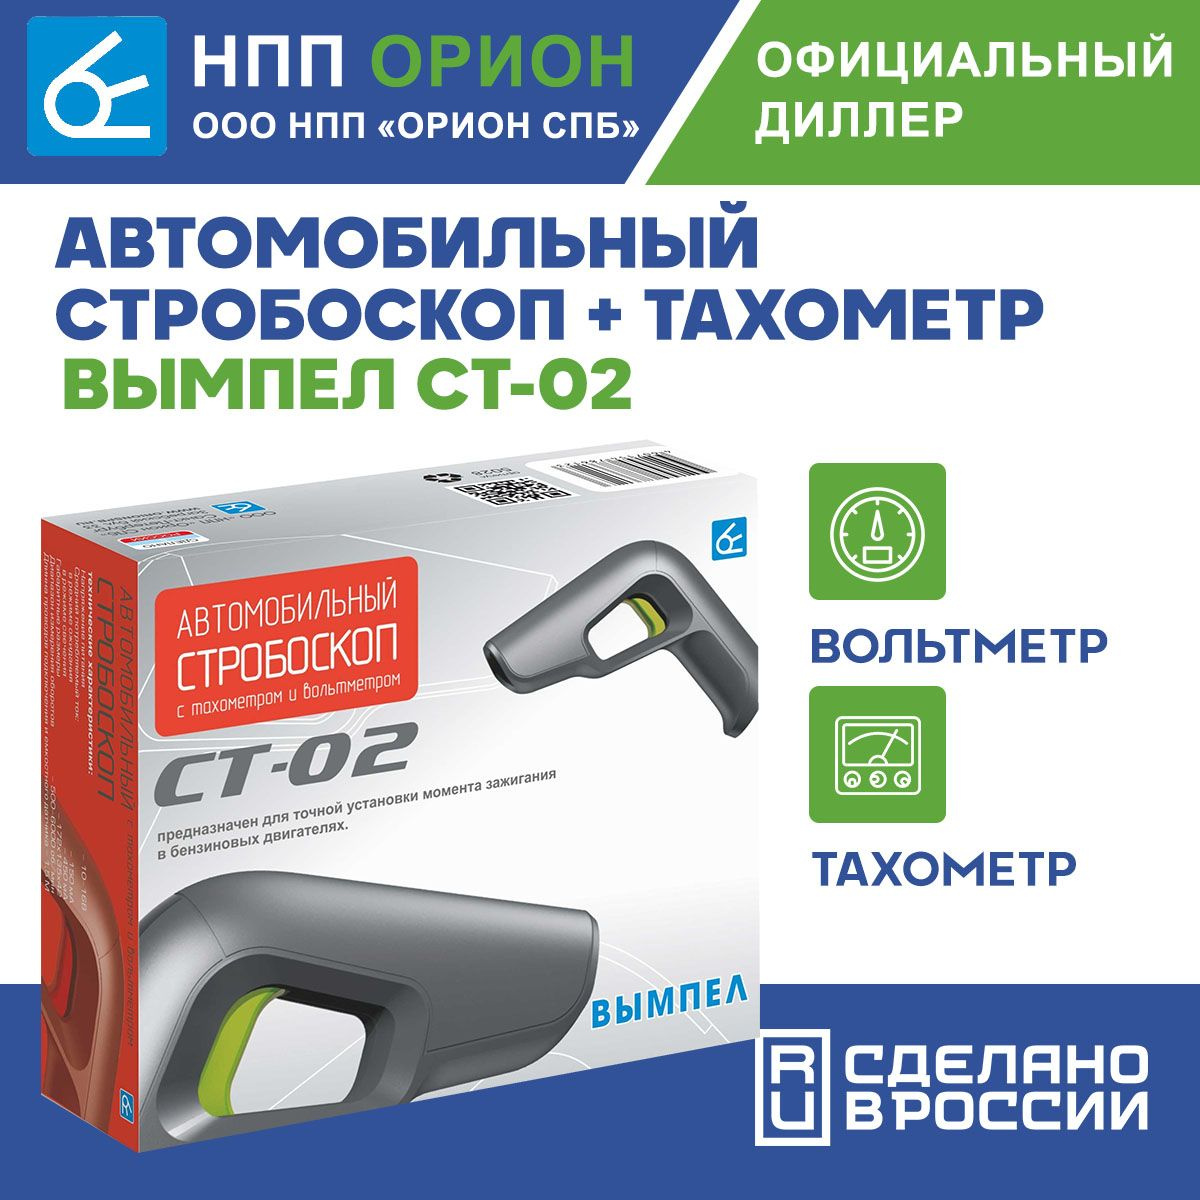 Стробоскоп автомобильный + тахометр Вымпел СТ-02